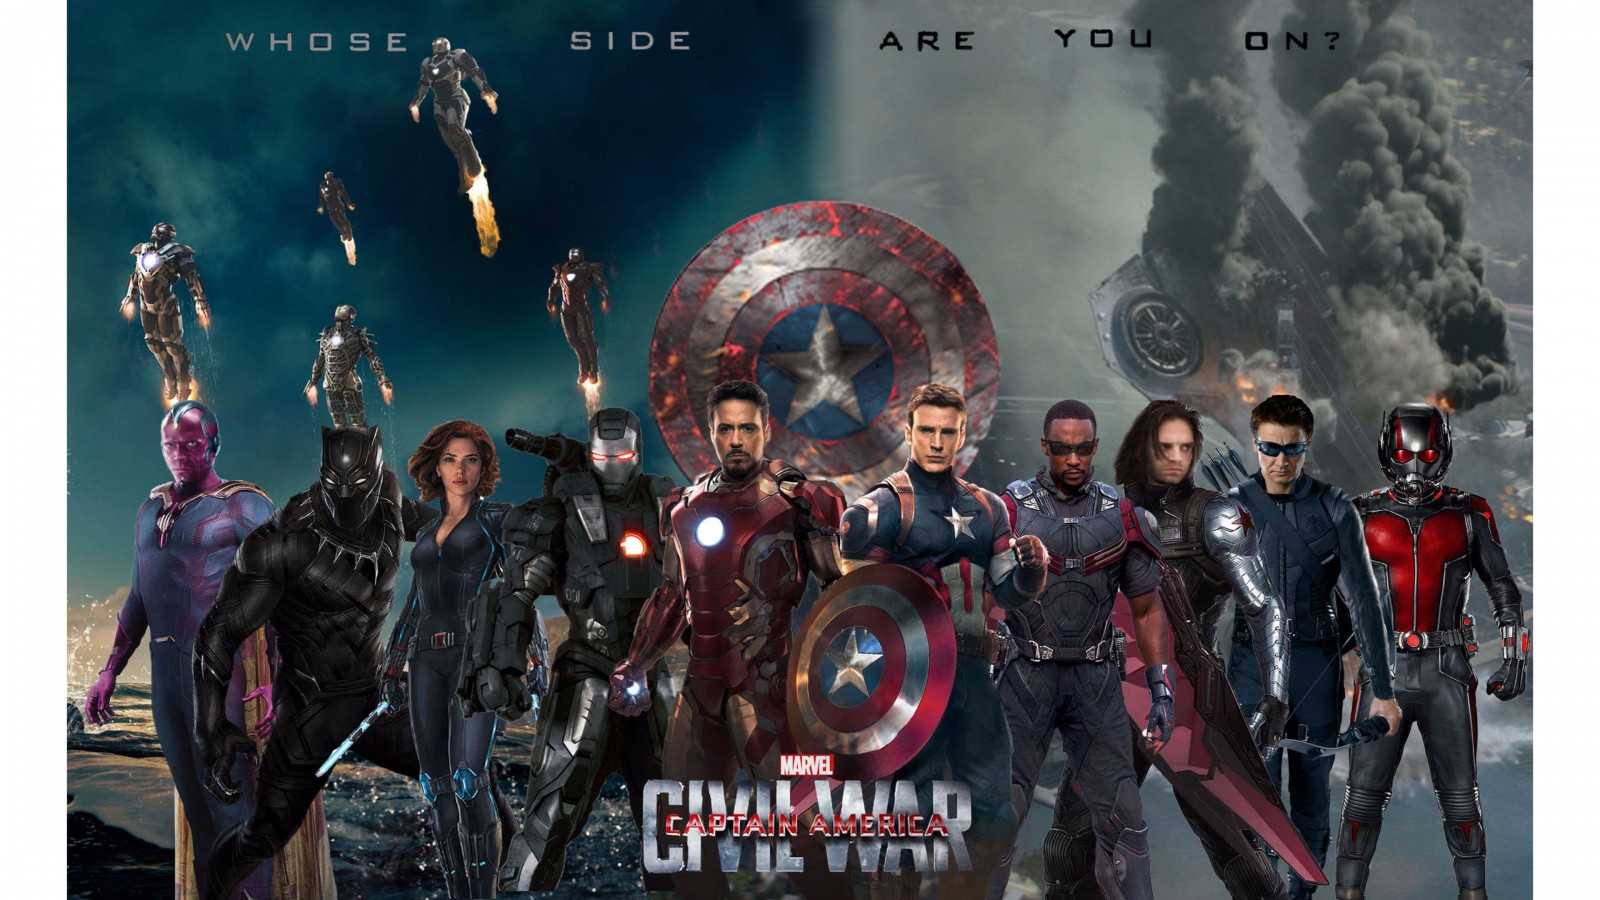 Captain America Civil War 4k Wallpaper